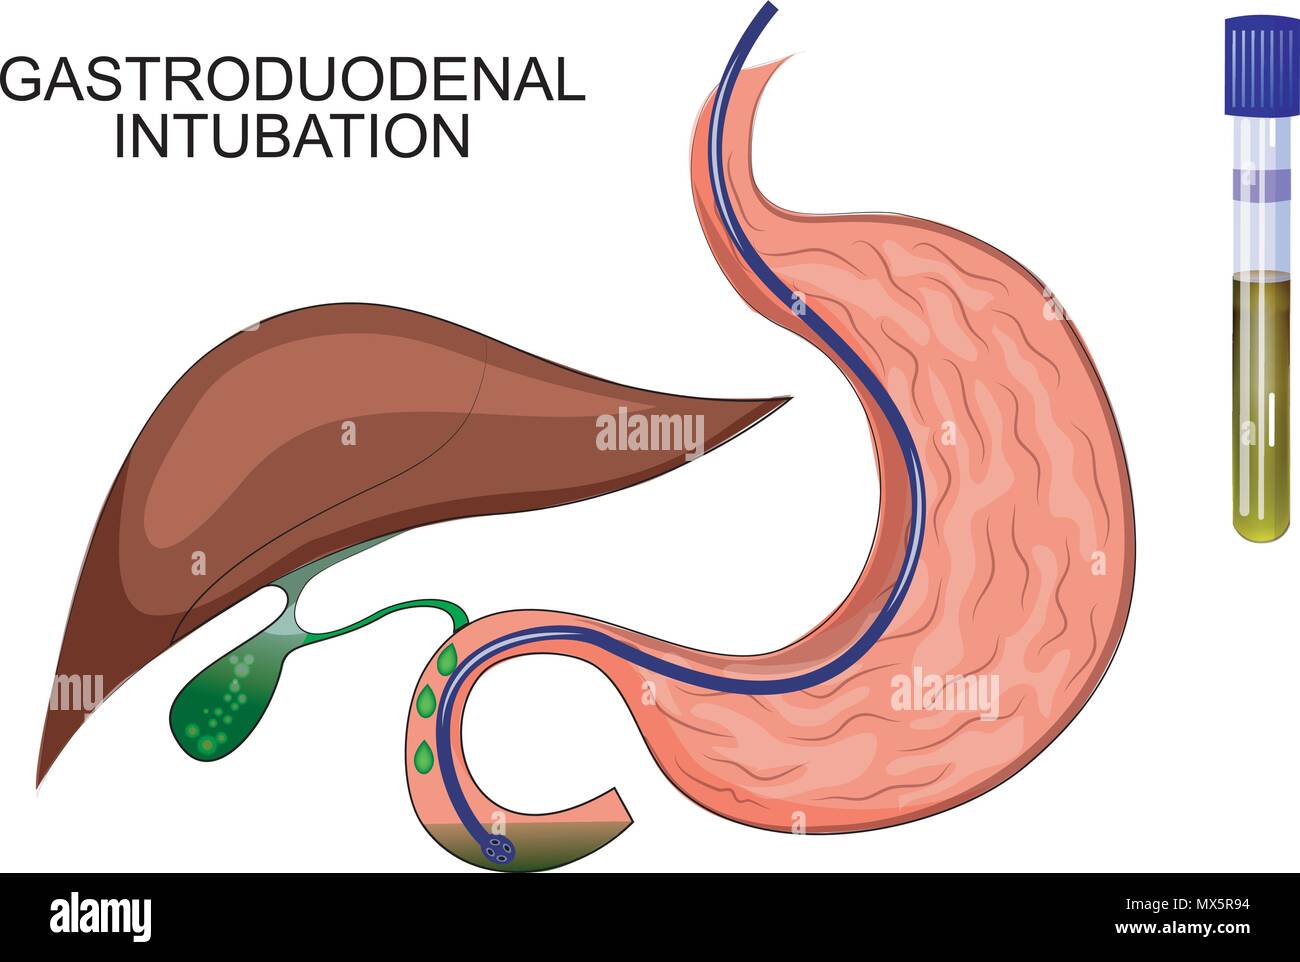 Illustrazione del duodeno dello stomaco. La diagnosi di malattie del fegato Illustrazione Vettoriale